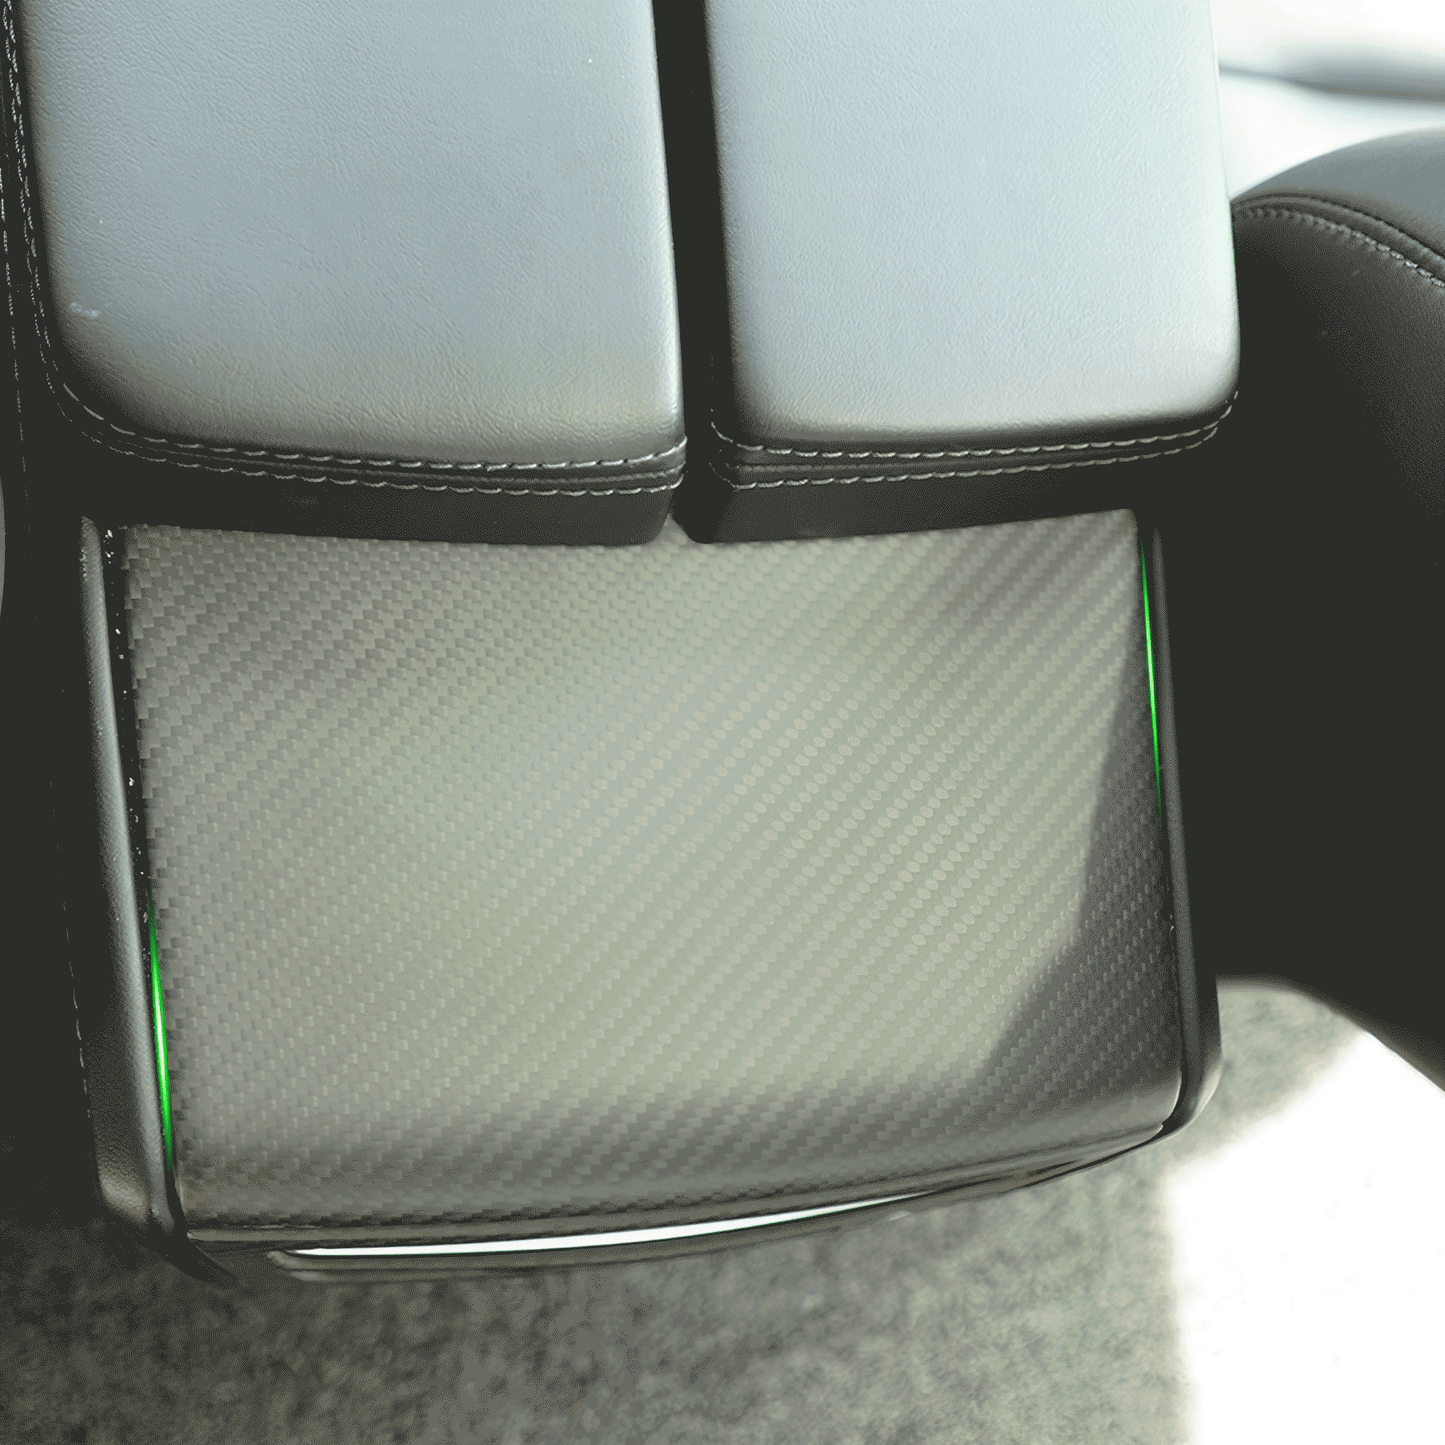 Carbon Fiber Rear Air Vent Upper Cover For Tesla Model S / X